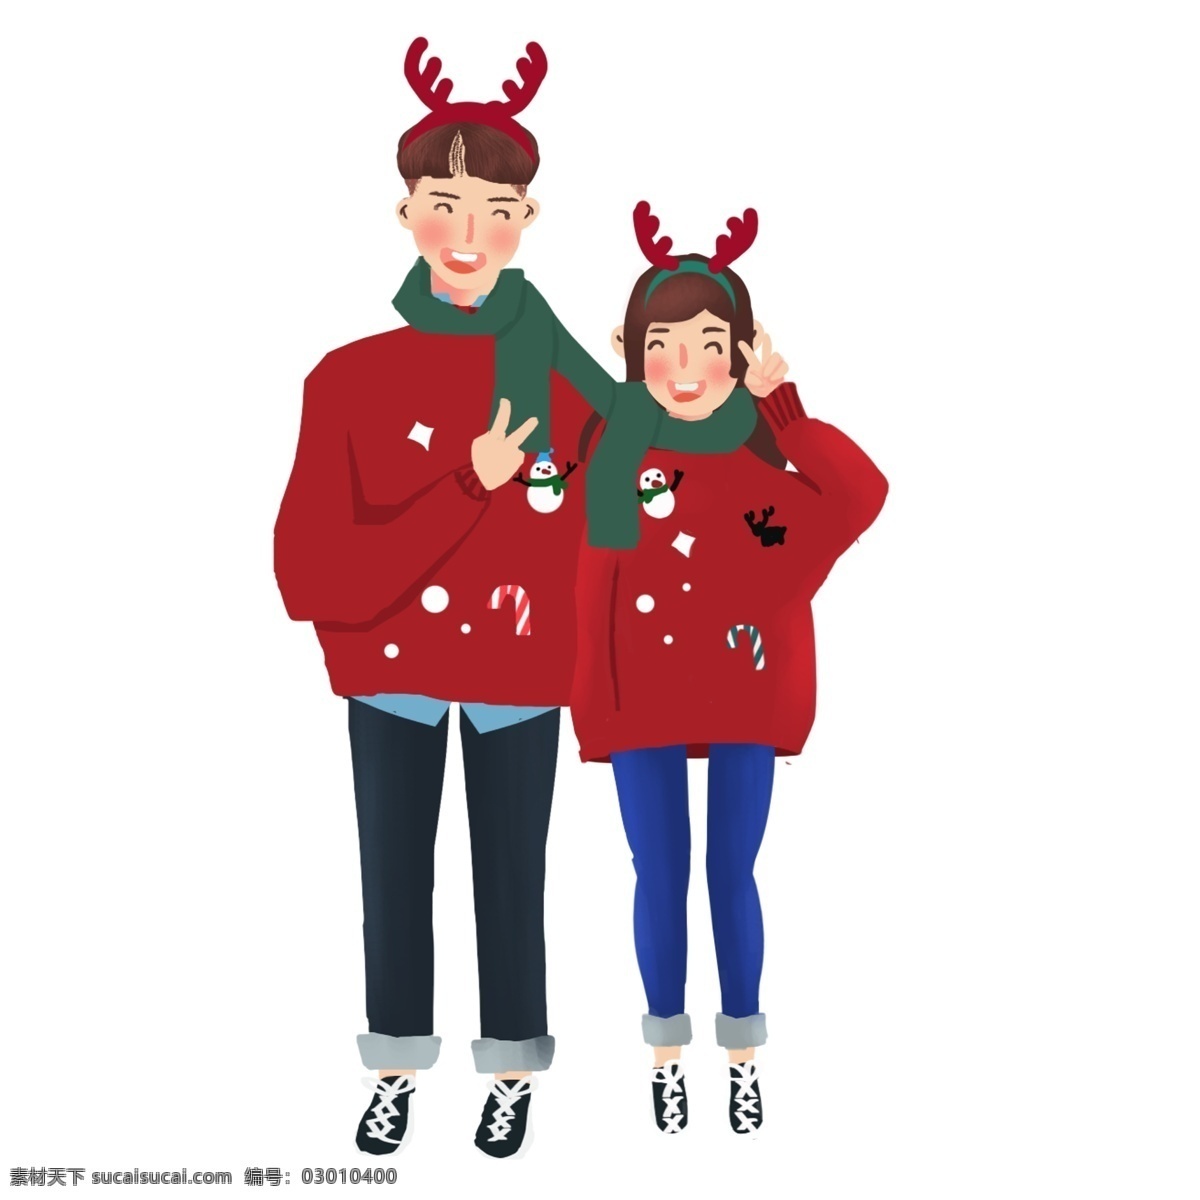 圣诞节 卡通 手绘 暖 系 小 清新 风格 大笑 情侣 卡通手绘 鹿角发卡 围巾 圣诞节装饰 雪人 驯鹿 鹿角